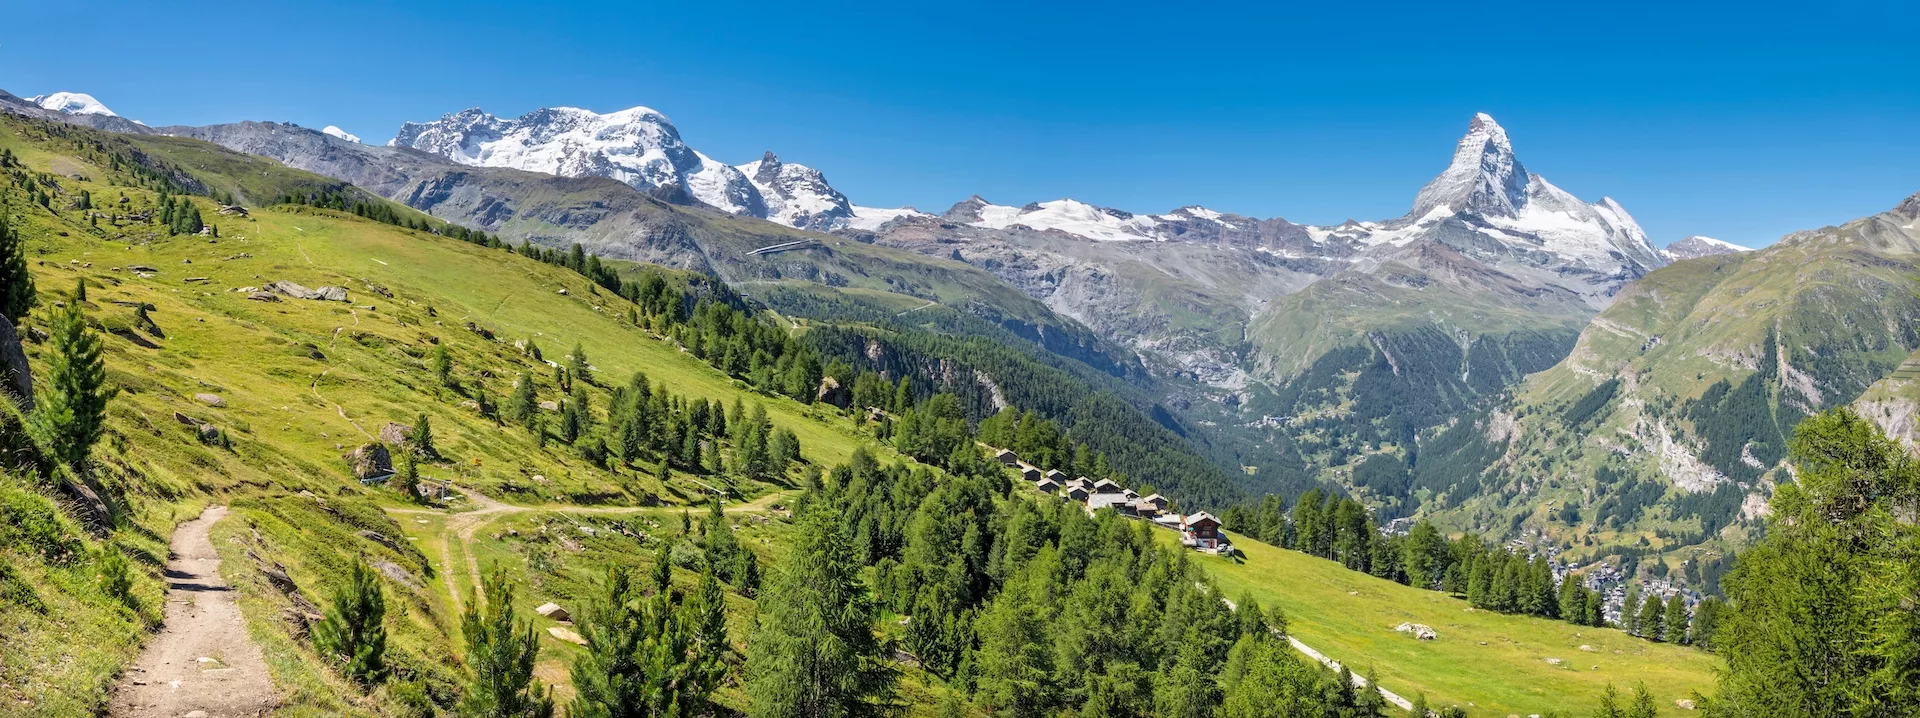 Le panorama des Alpes suisses de Walliser avec les sommets du Cervin et du Breithorn.